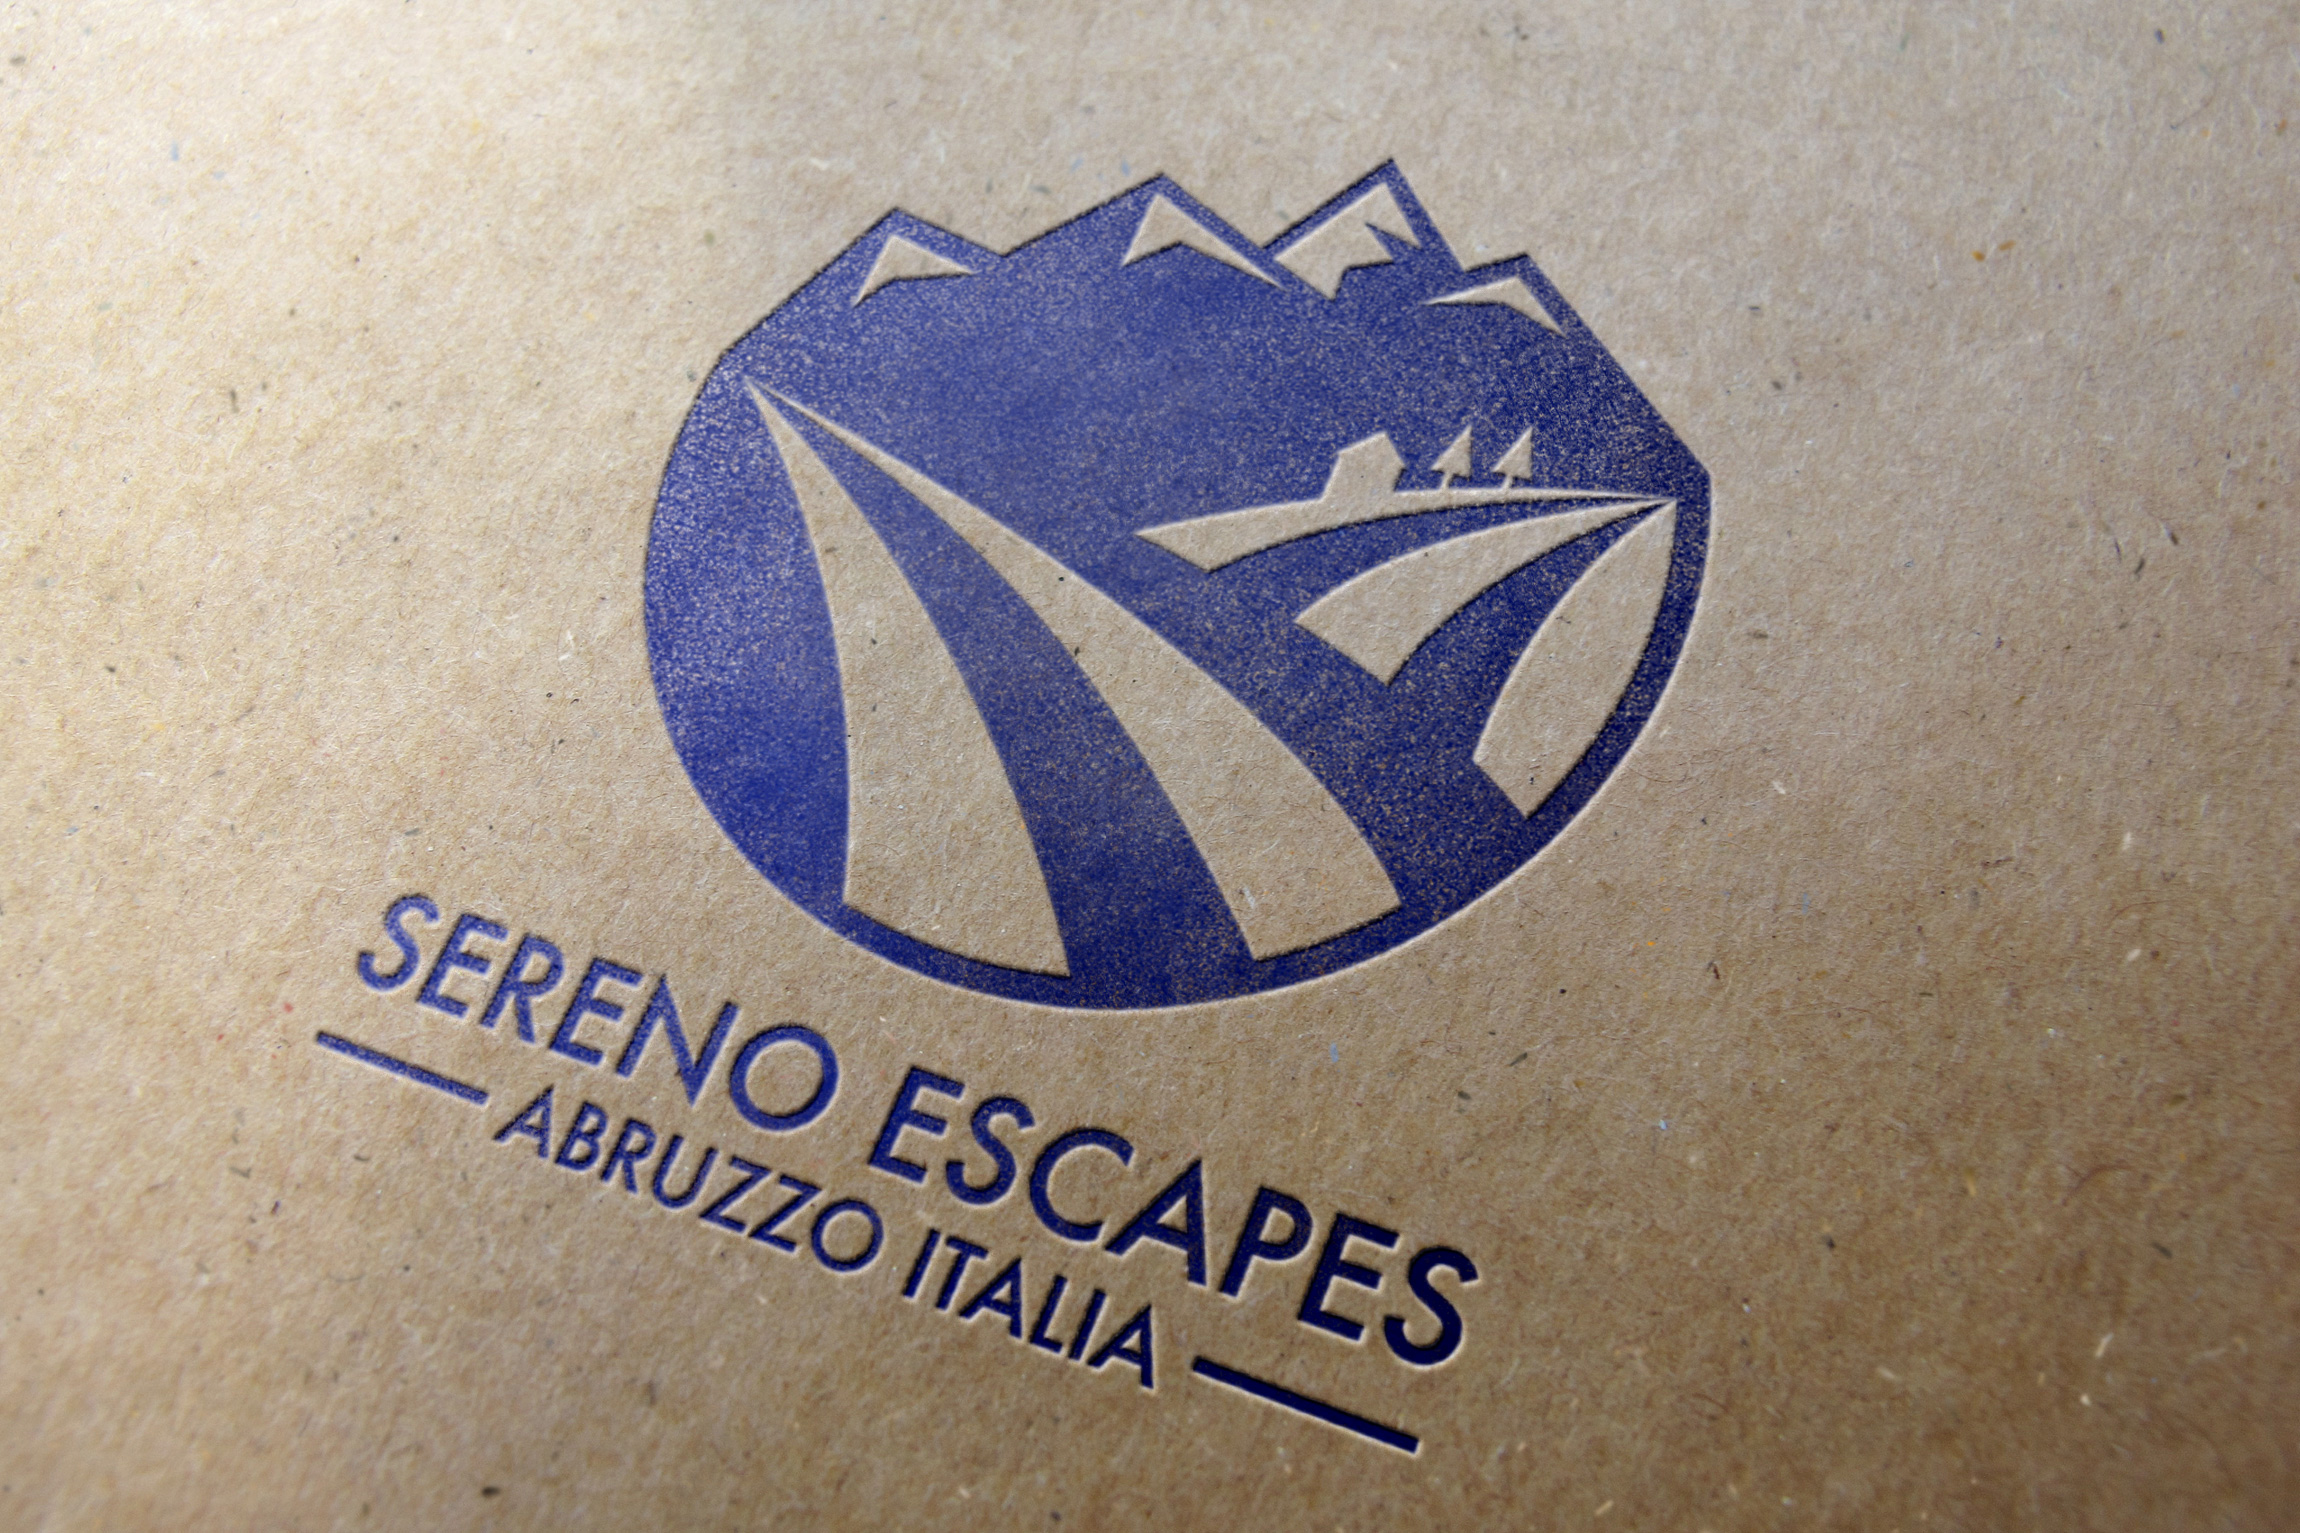 Sereno-Escapes-Paper-Mockup.jpg